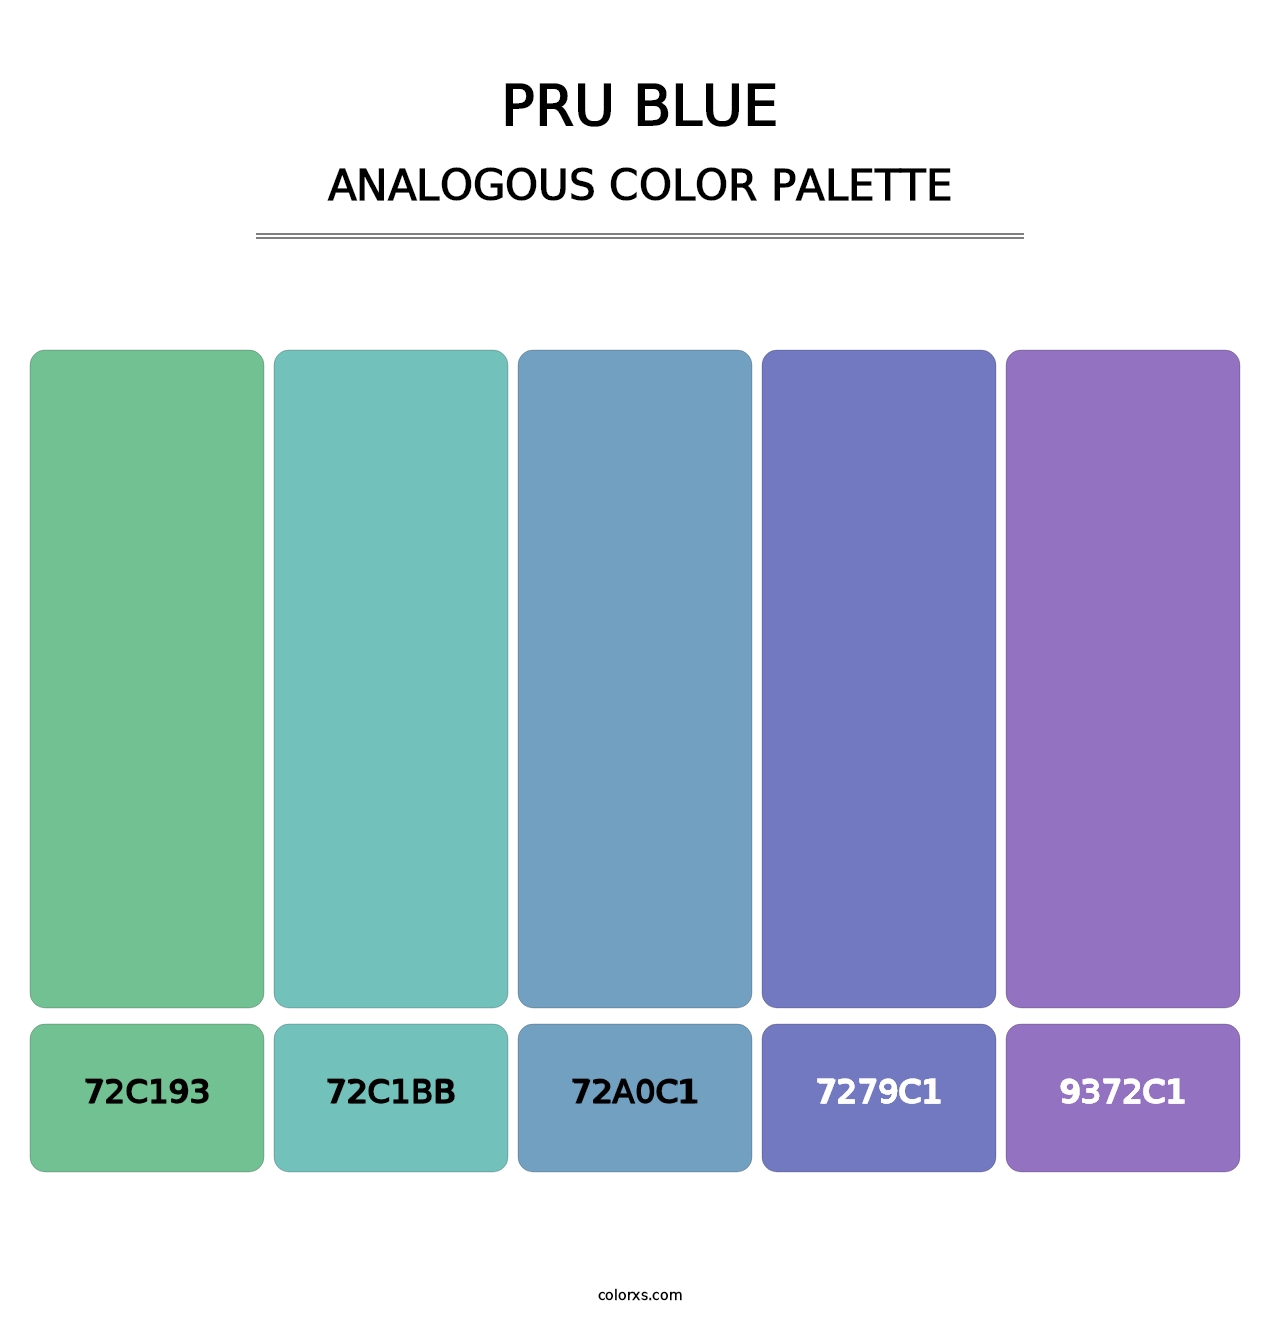 PRU Blue - Analogous Color Palette